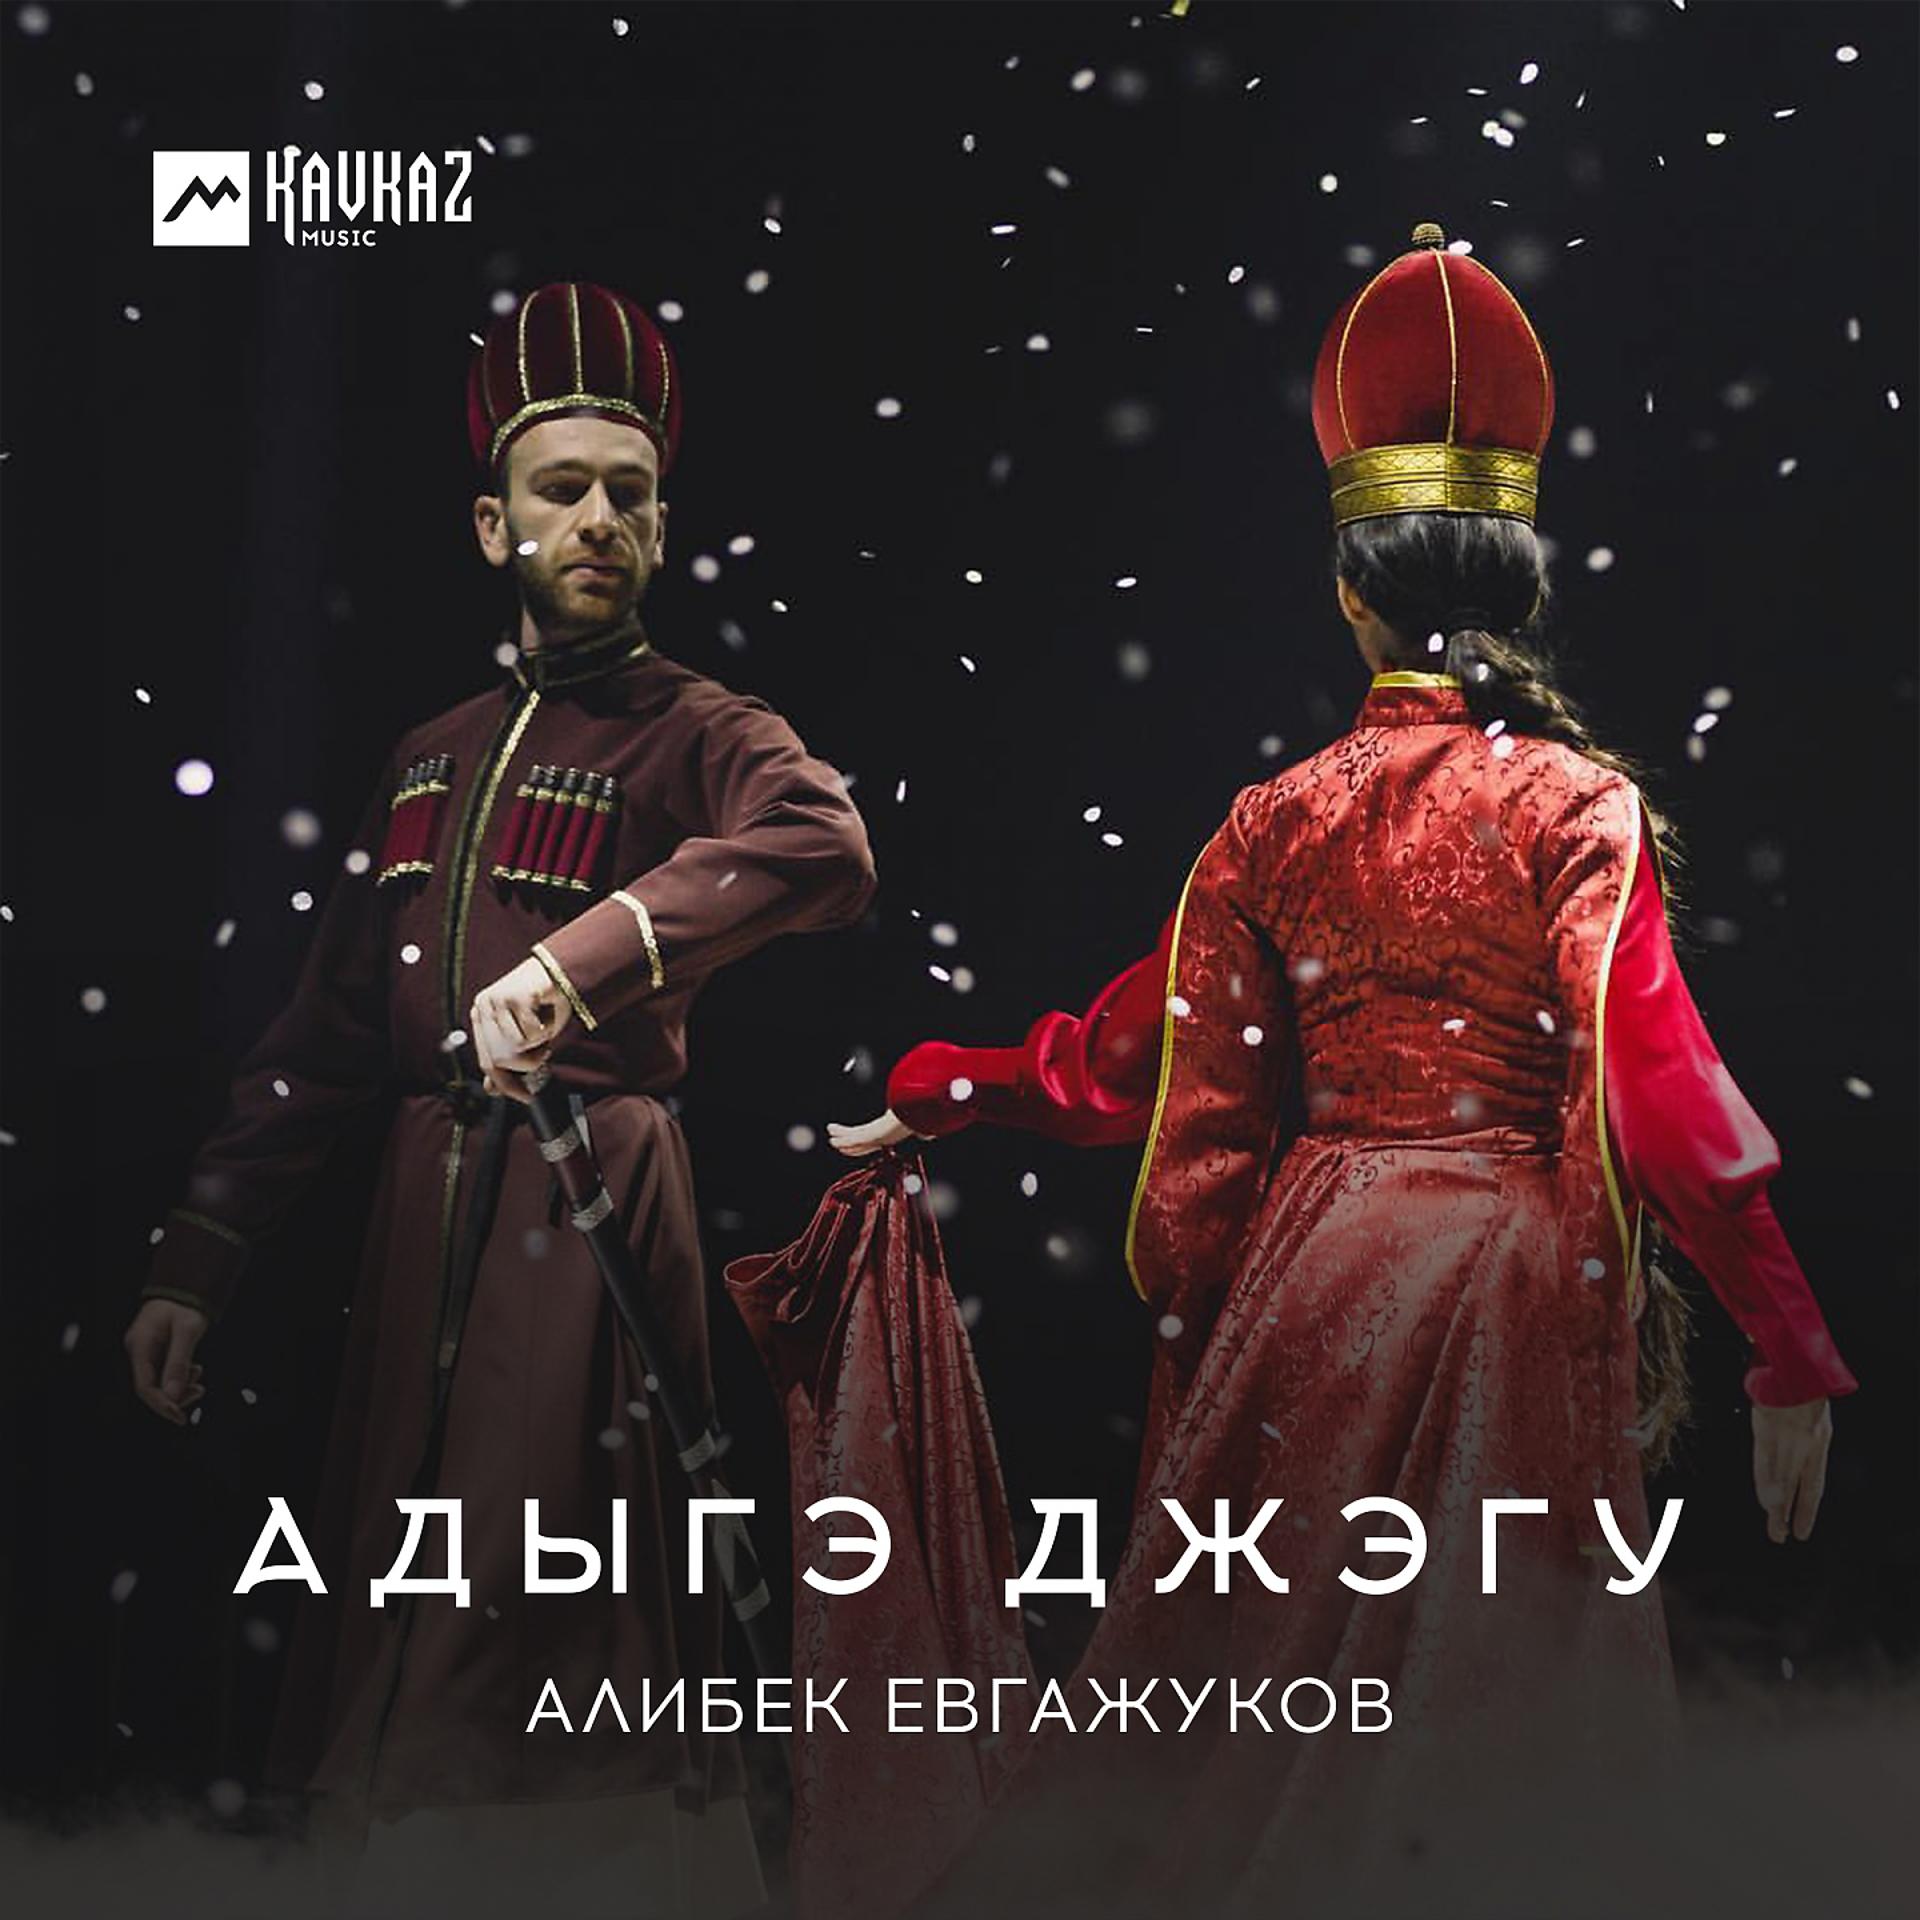 Постер к треку Алибек Евгажуков - Адыгэ джэгу